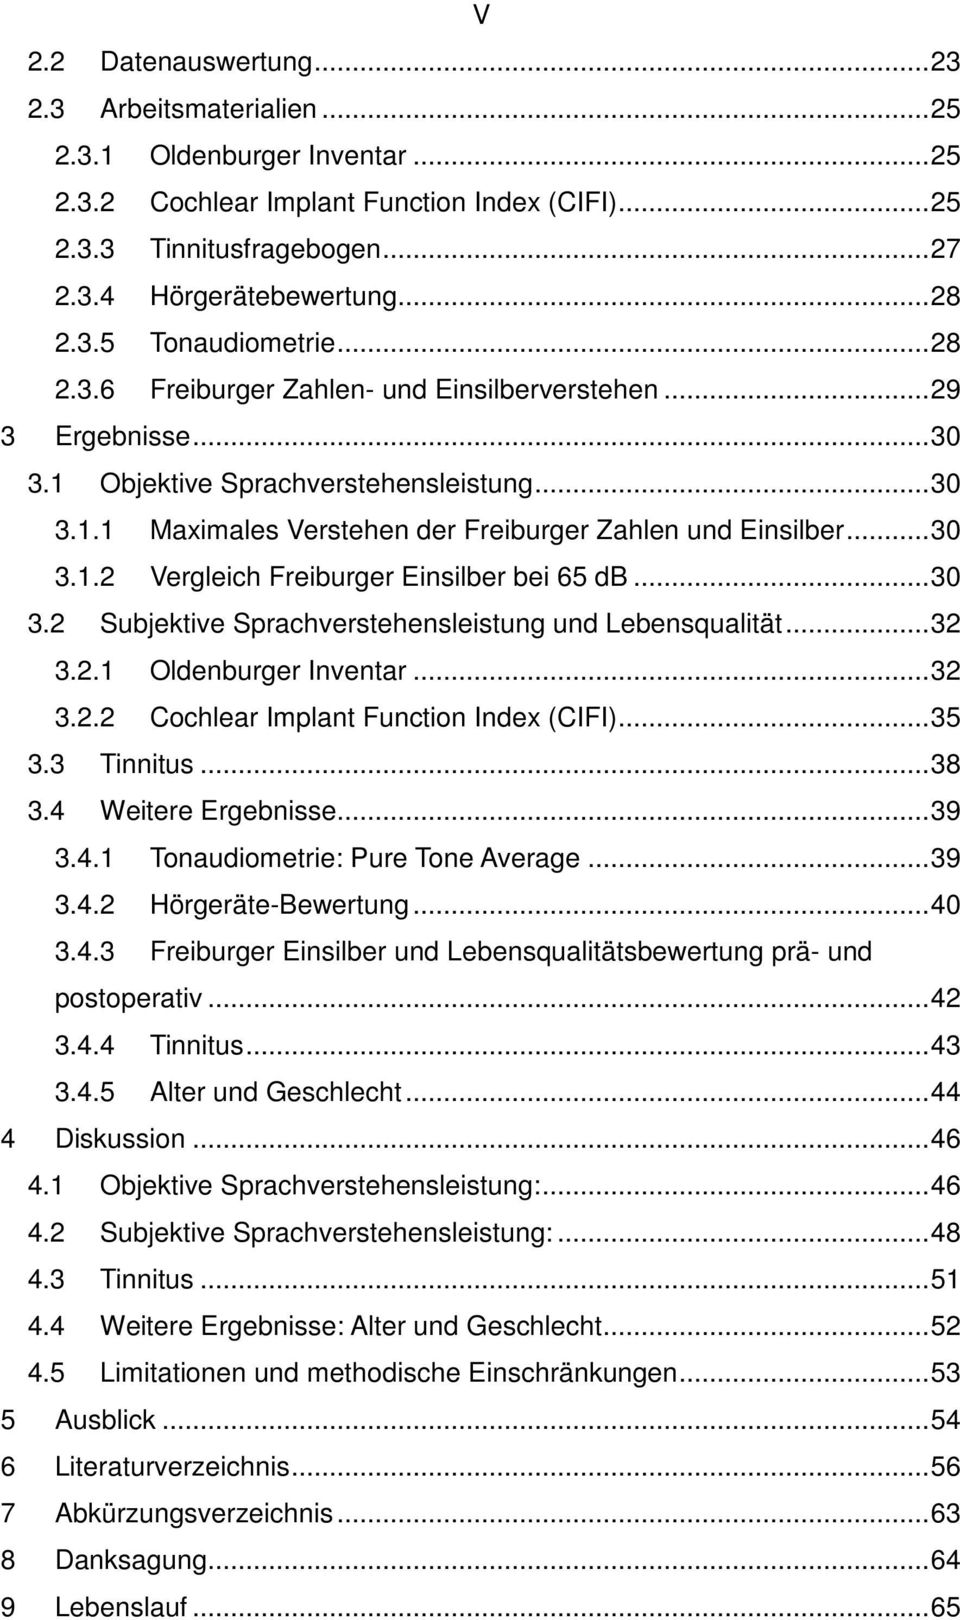 .. 30 3.1.2 Vergleich Freiburger Einsilber bei 65 db... 30 3.2 Subjektive Sprachverstehensleistung und Lebensqualität... 32 3.2.1 Oldenburger Inventar... 32 3.2.2 Cochlear Implant Function Index (CIFI).